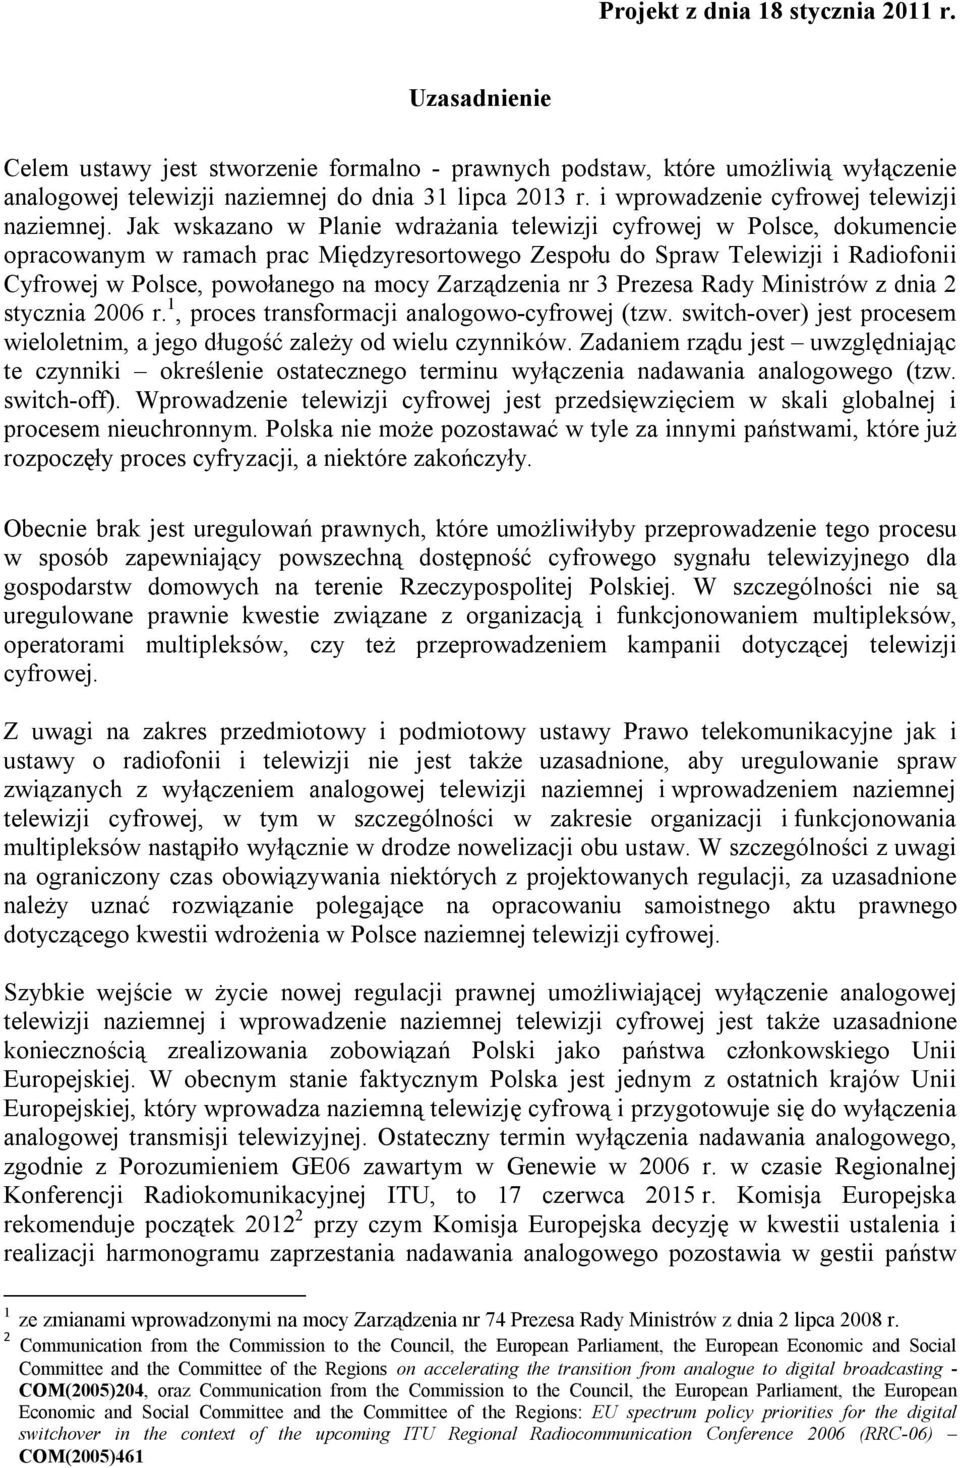 Jak wskazano w Planie wdrażania telewizji cyfrowej w Polsce, dokumencie opracowanym w ramach prac Międzyresortowego Zespołu do Spraw Telewizji i Radiofonii Cyfrowej w Polsce, powołanego na mocy